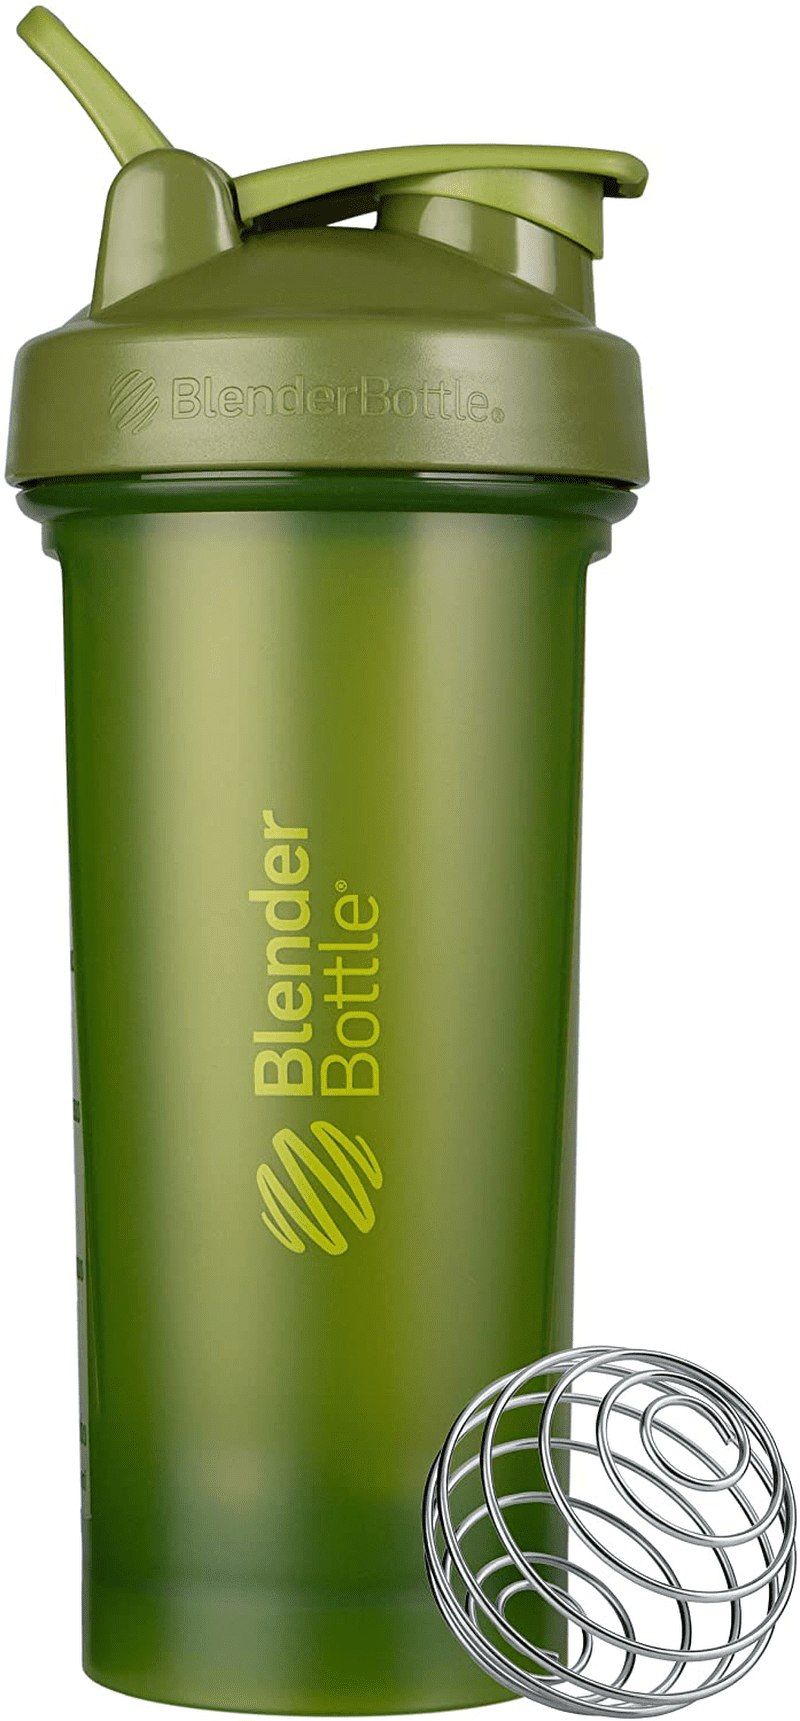 BlenderBottle Classic Blender Bottle - Assorted, 28 oz - Fry's Food Stores